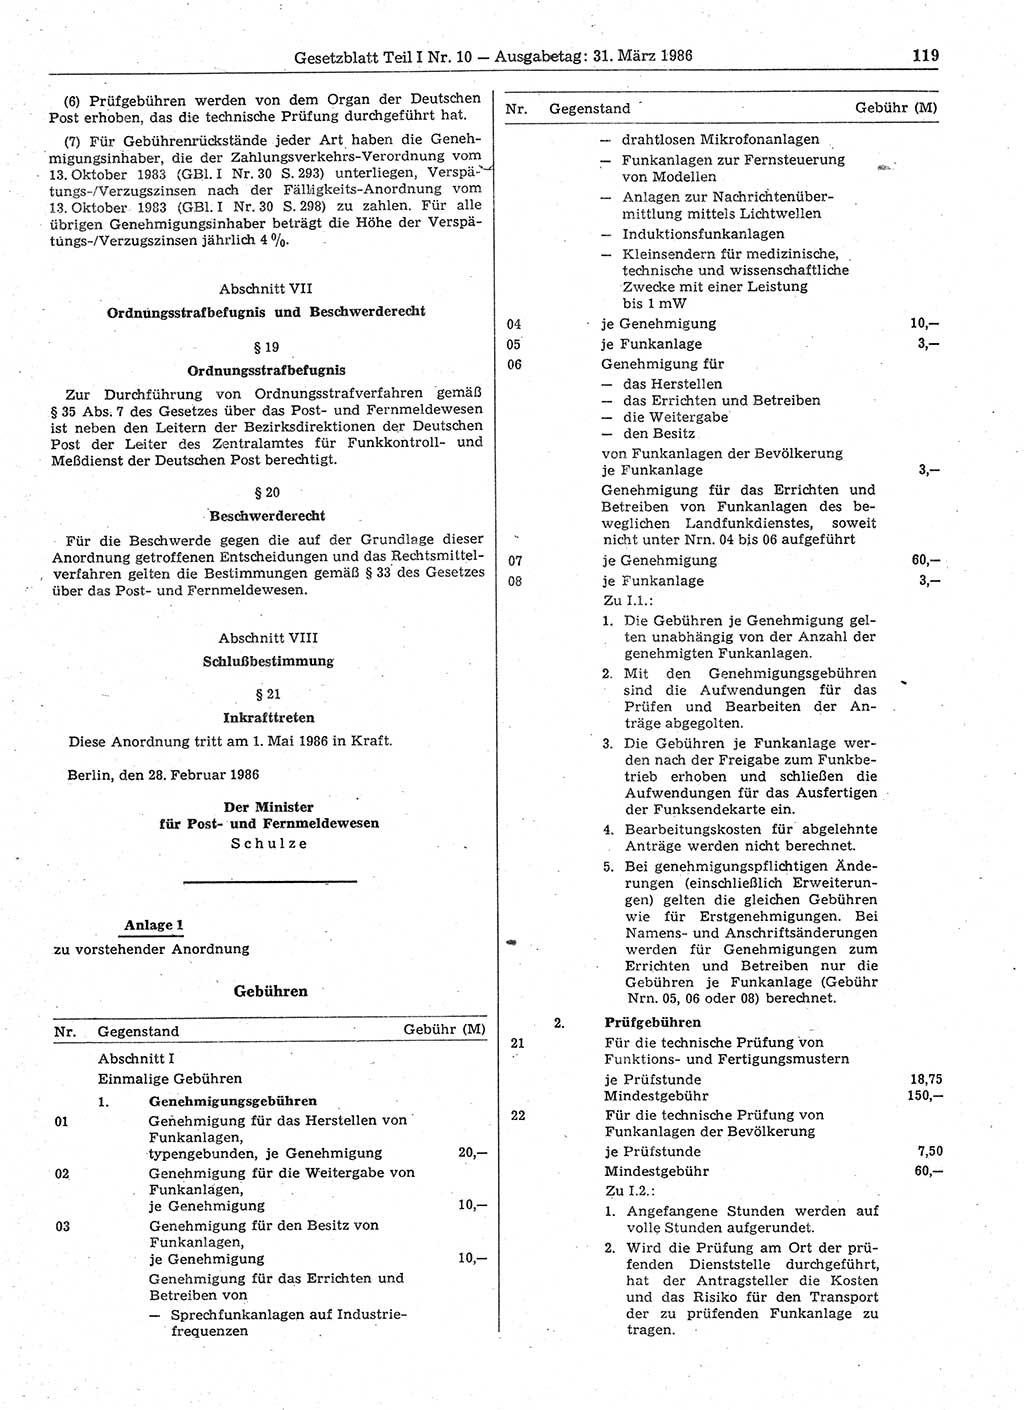 Gesetzblatt (GBl.) der Deutschen Demokratischen Republik (DDR) Teil Ⅰ 1986, Seite 119 (GBl. DDR Ⅰ 1986, S. 119)